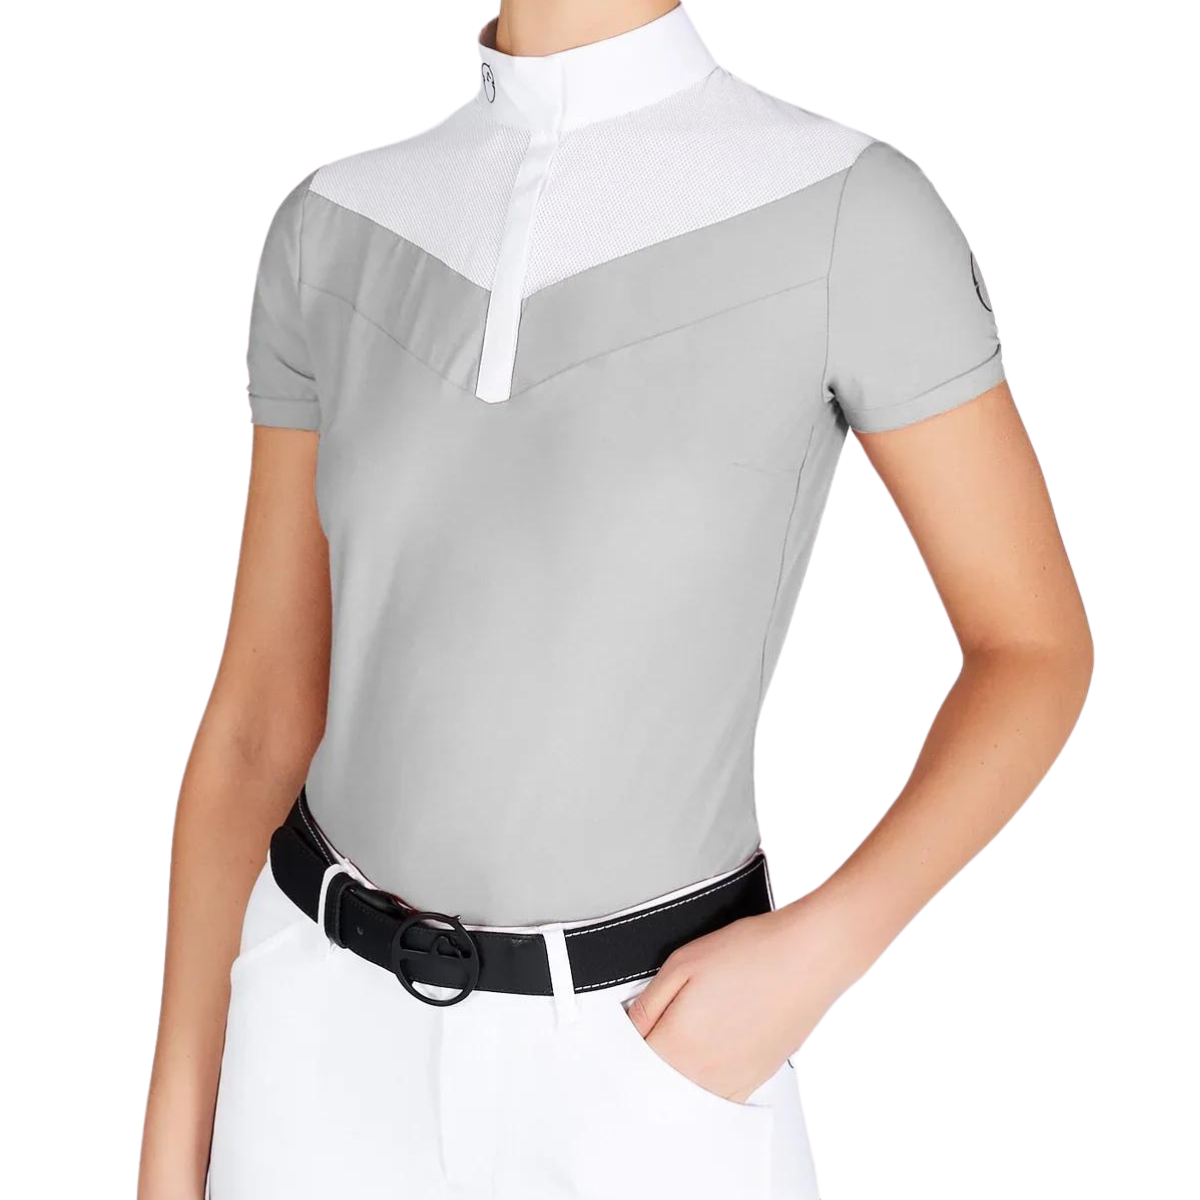 Vestrum Simeri Short Sleeve Show Shirt in Light Grey/White - Women&#39;s Small